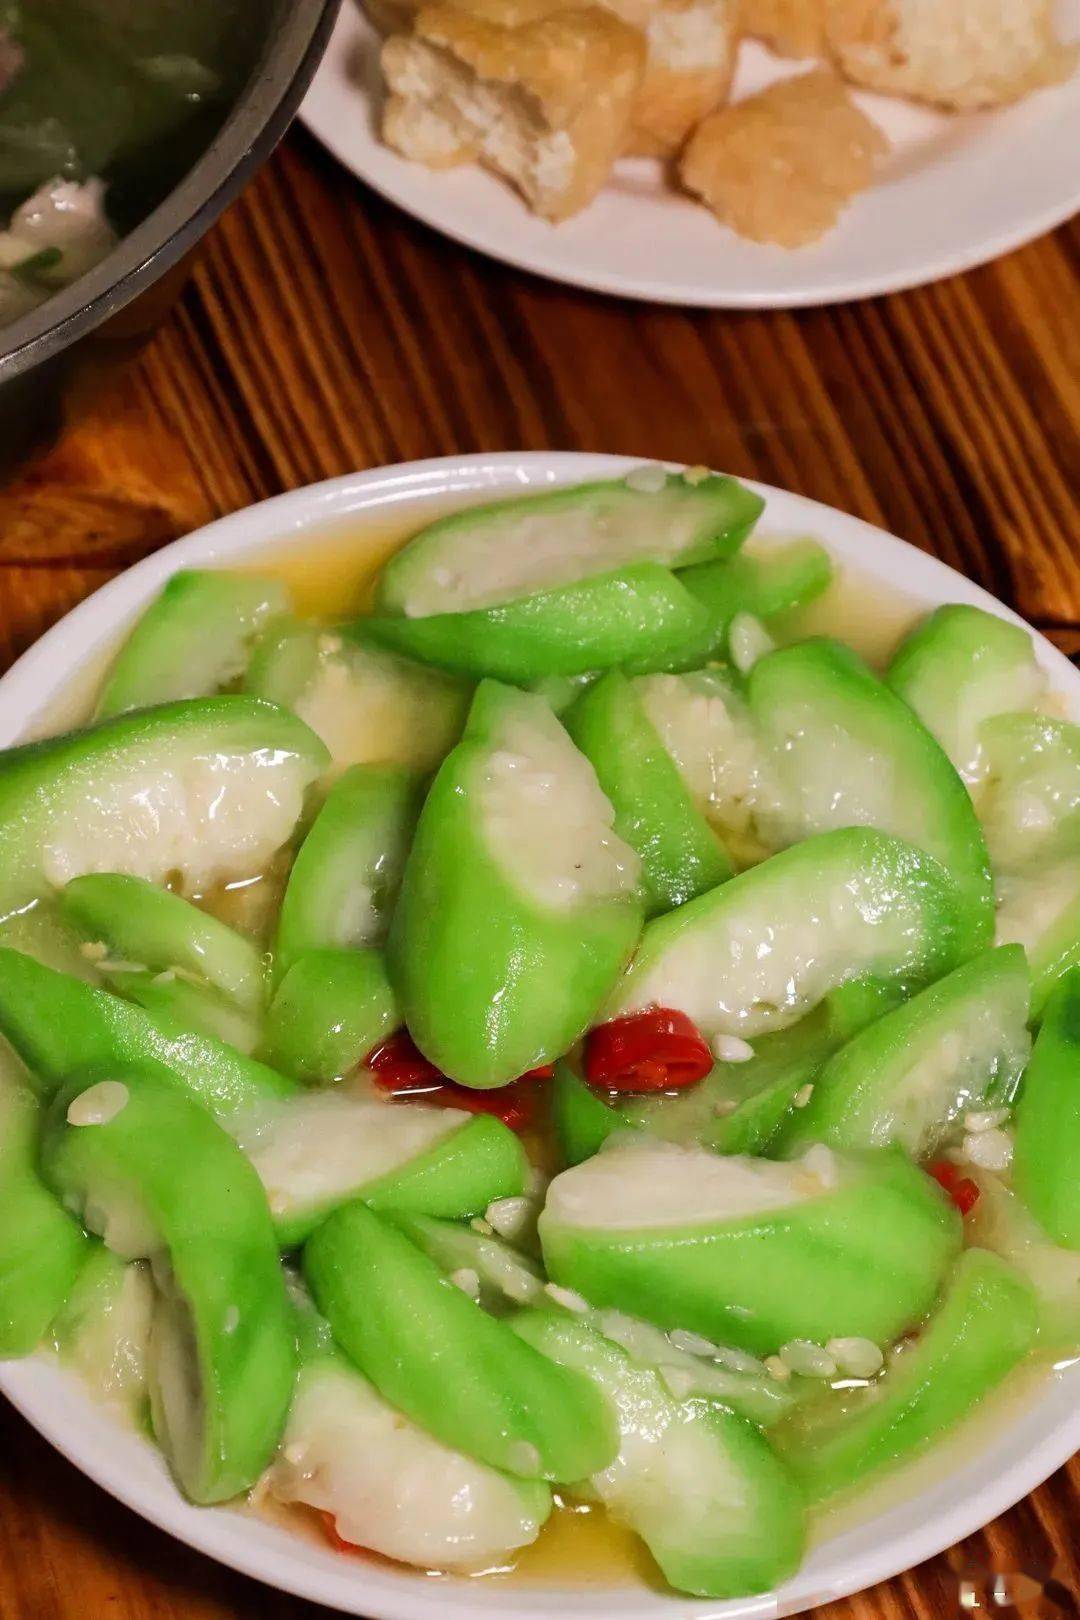 素炒八棱瓜,18元/份八棱瓜翠绿的色泽让人充满了食欲,瓜肉为白色,营养